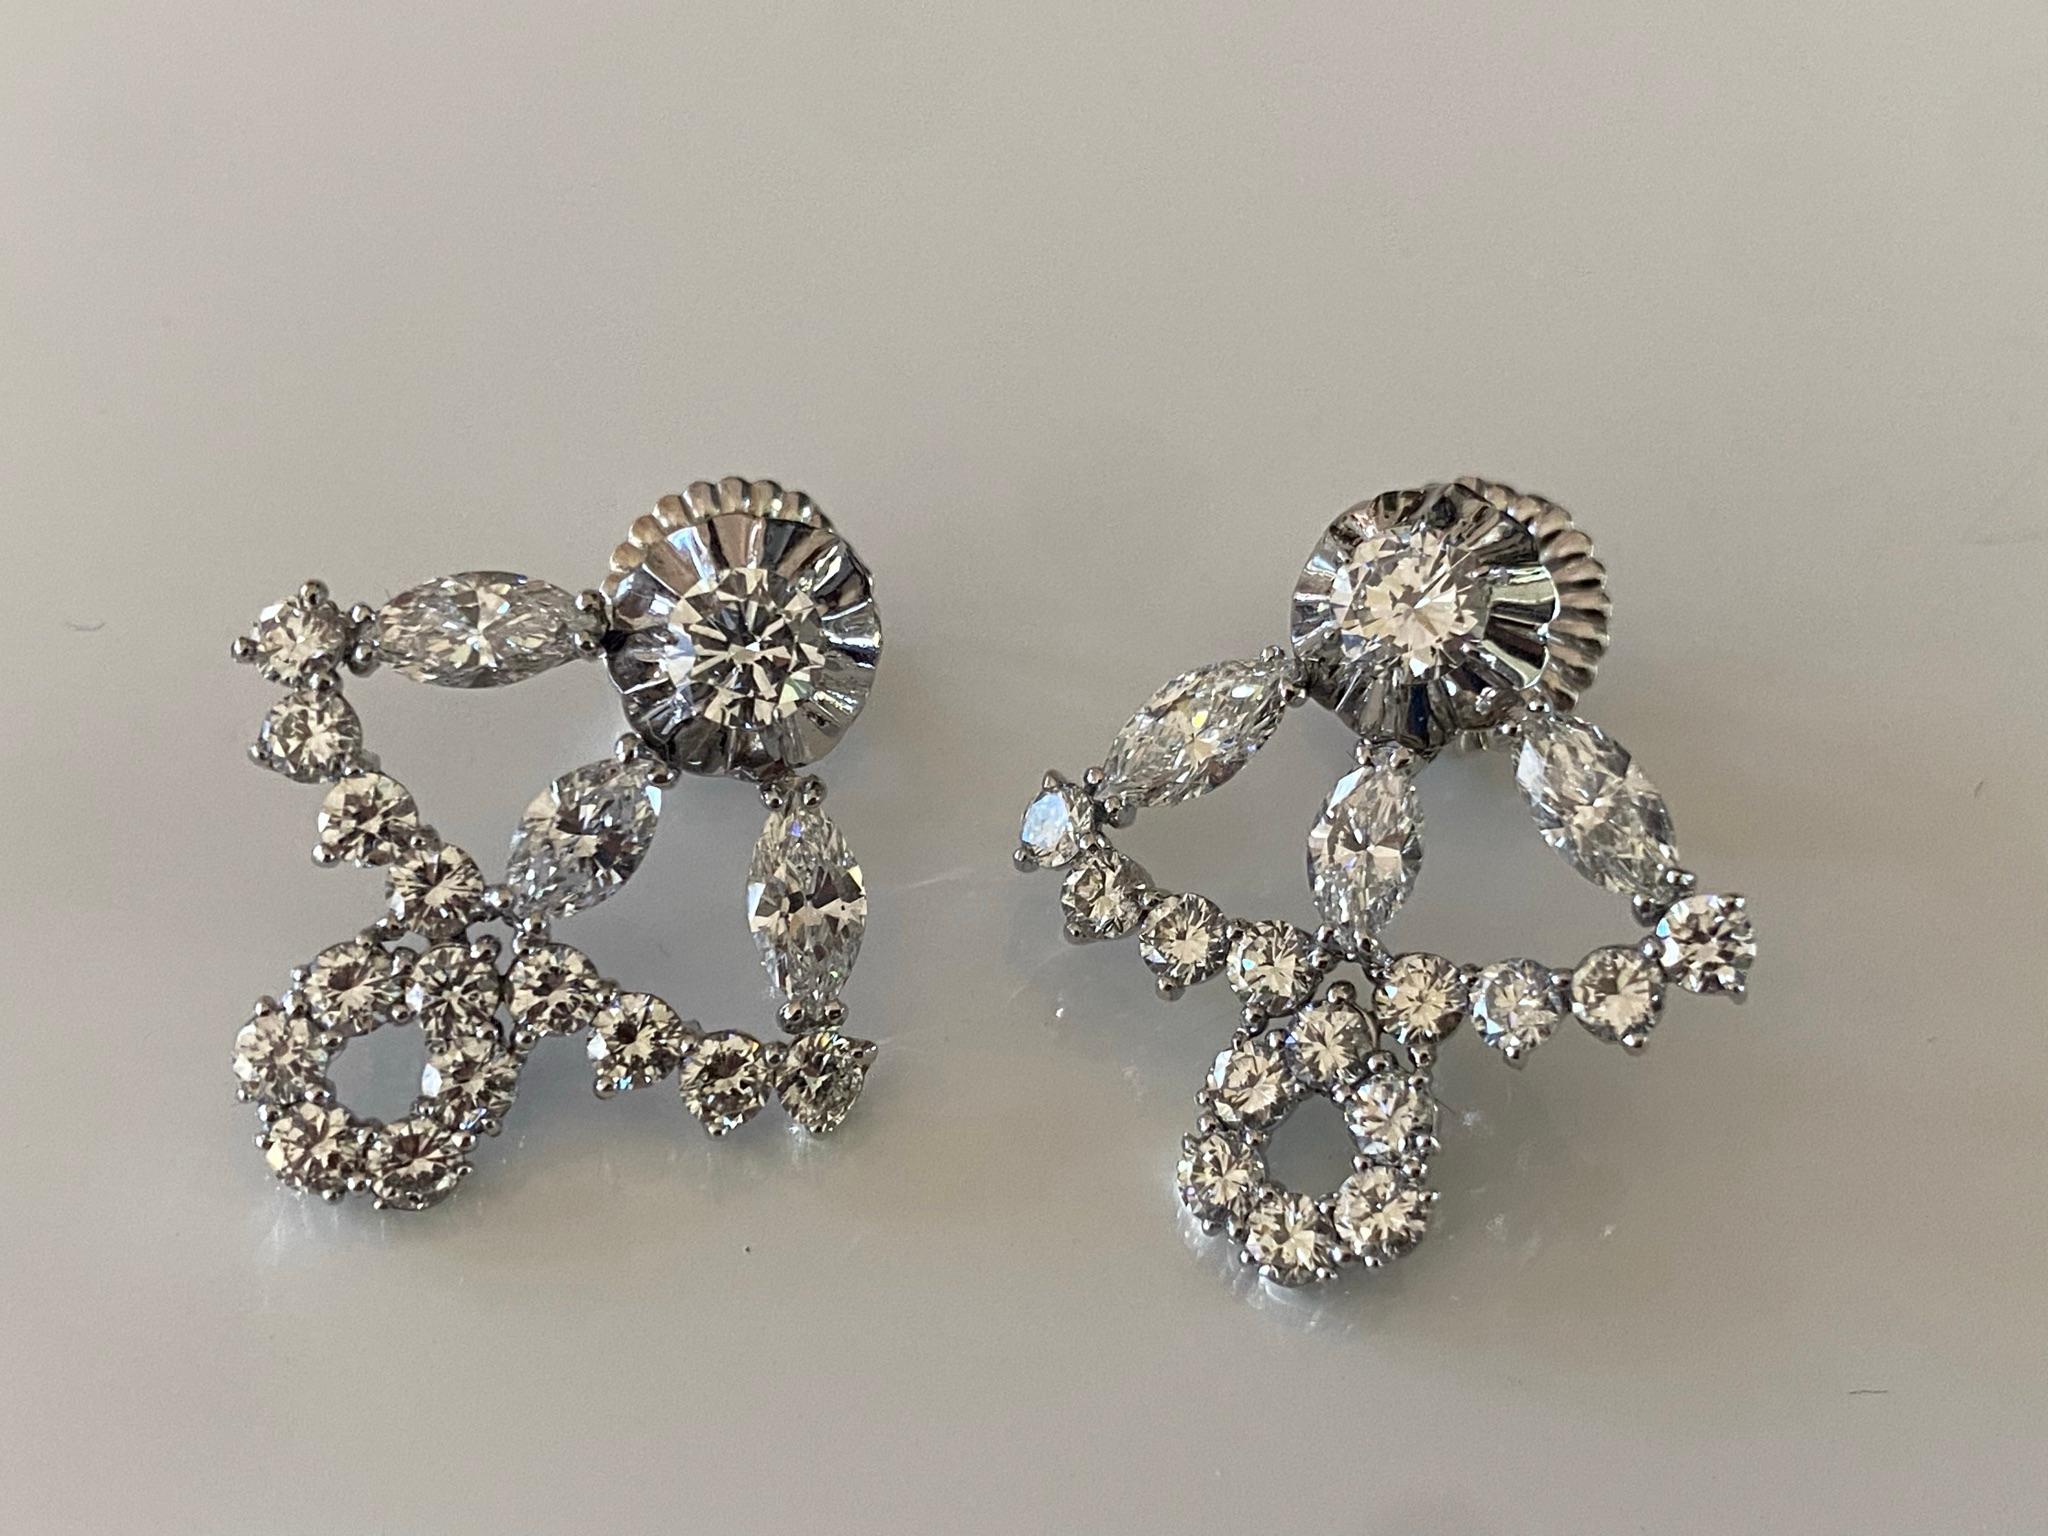 Diese maßgefertigten, von der Art déco der 1920er Jahre inspirierten Ohrringe aus 18-karätigem Weißgold sind um eine schillernde Reihe runder Diamanten im Brillant- und Marquis-Schliff mit einem Gesamtgewicht von 5,05 Karat und einer Länge von ca. 1